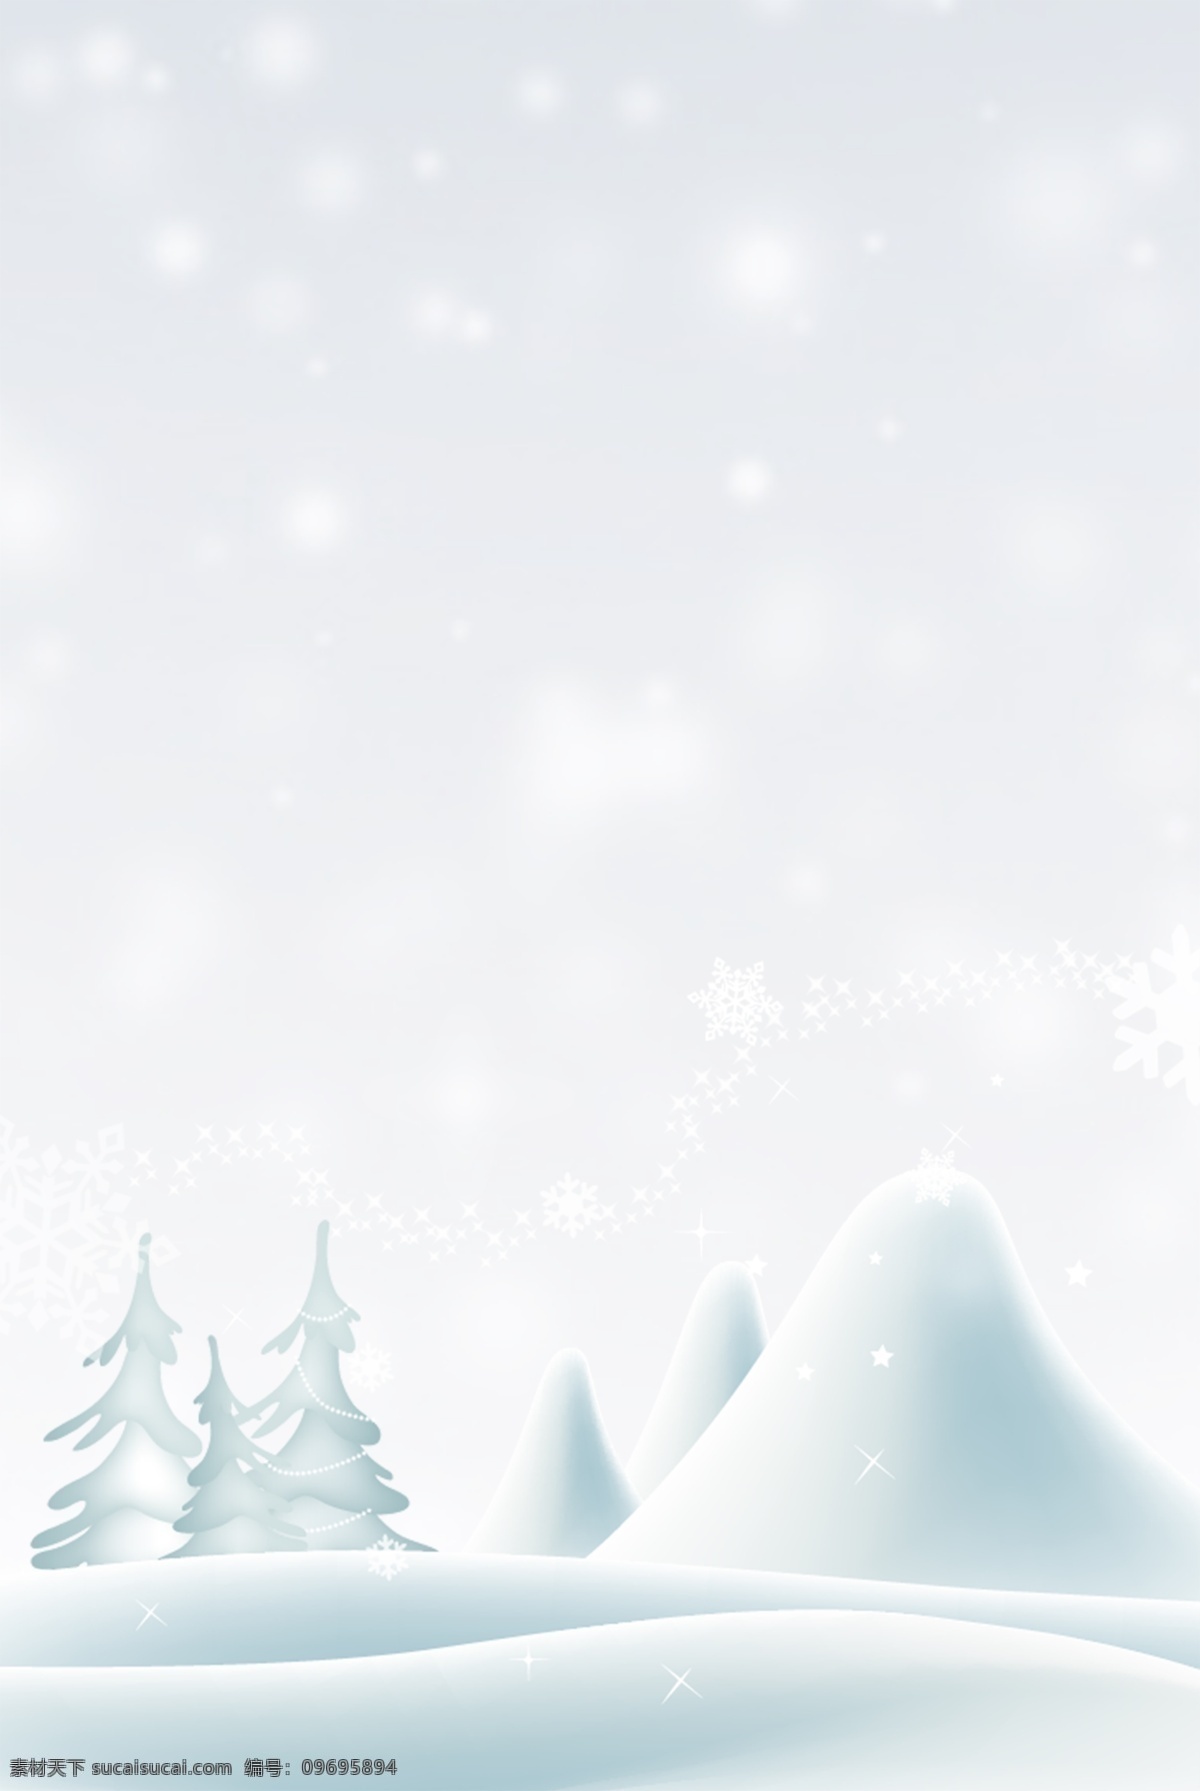 节气 冬季 雪地 雪景 宣传海报 背景 雪 宣传 手绘 海报 简约